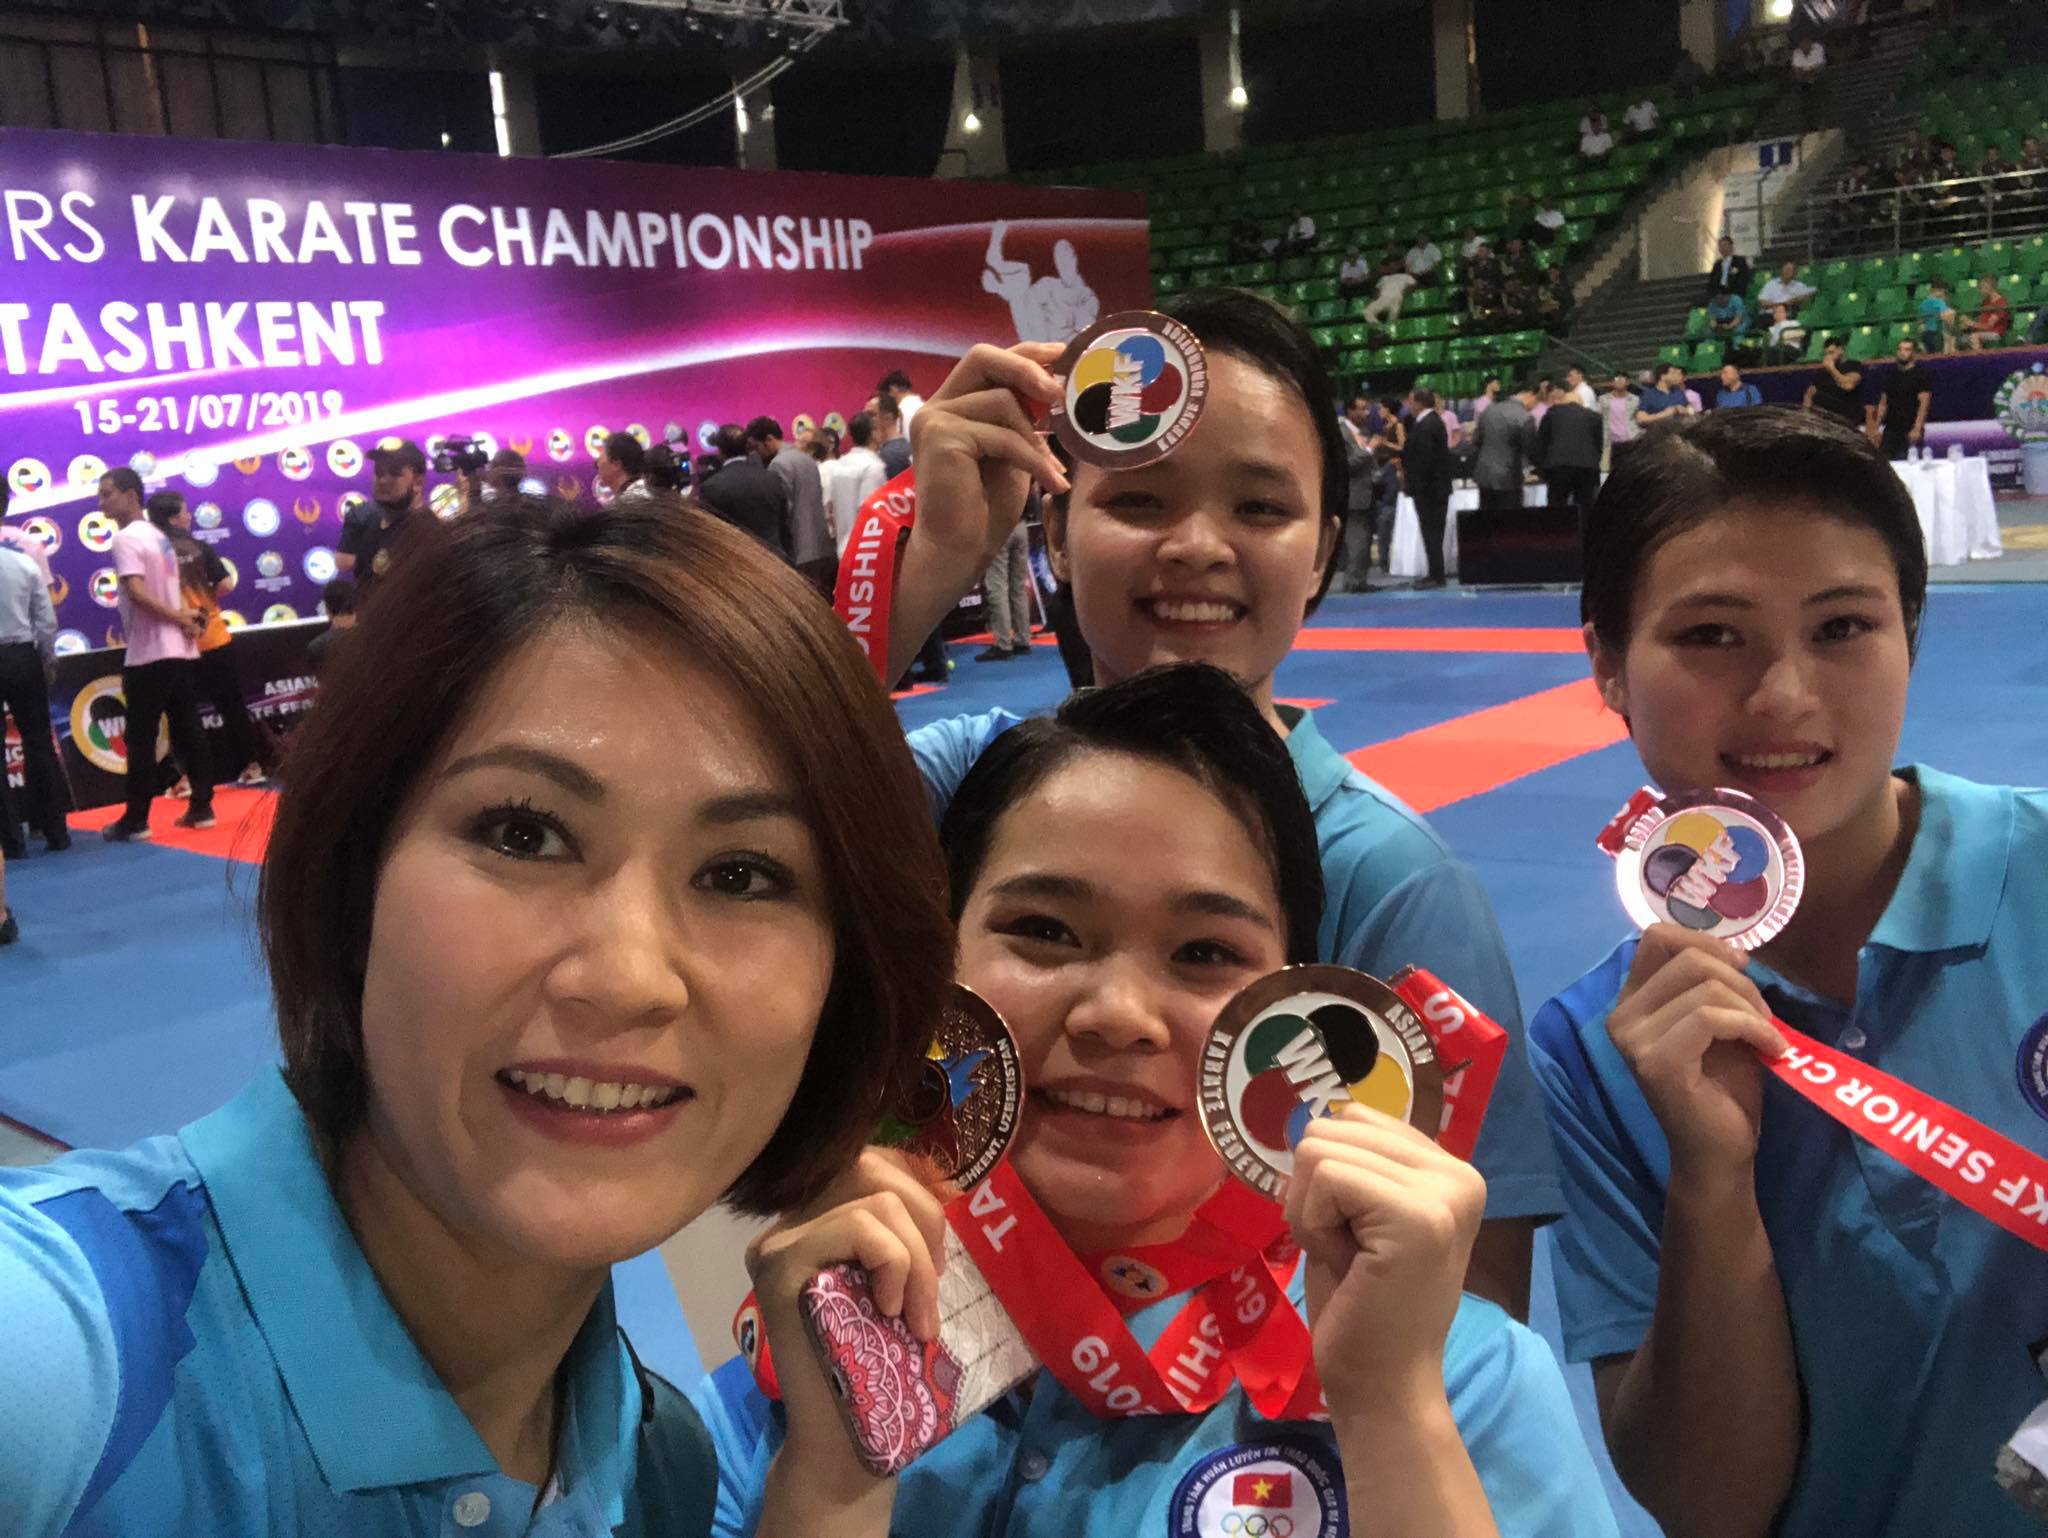 Nguyễn Thị Phương giành 2 HCĐ cá nhân và đồng đội nội dung Kata nữ giải vô địch karate châu á 2019